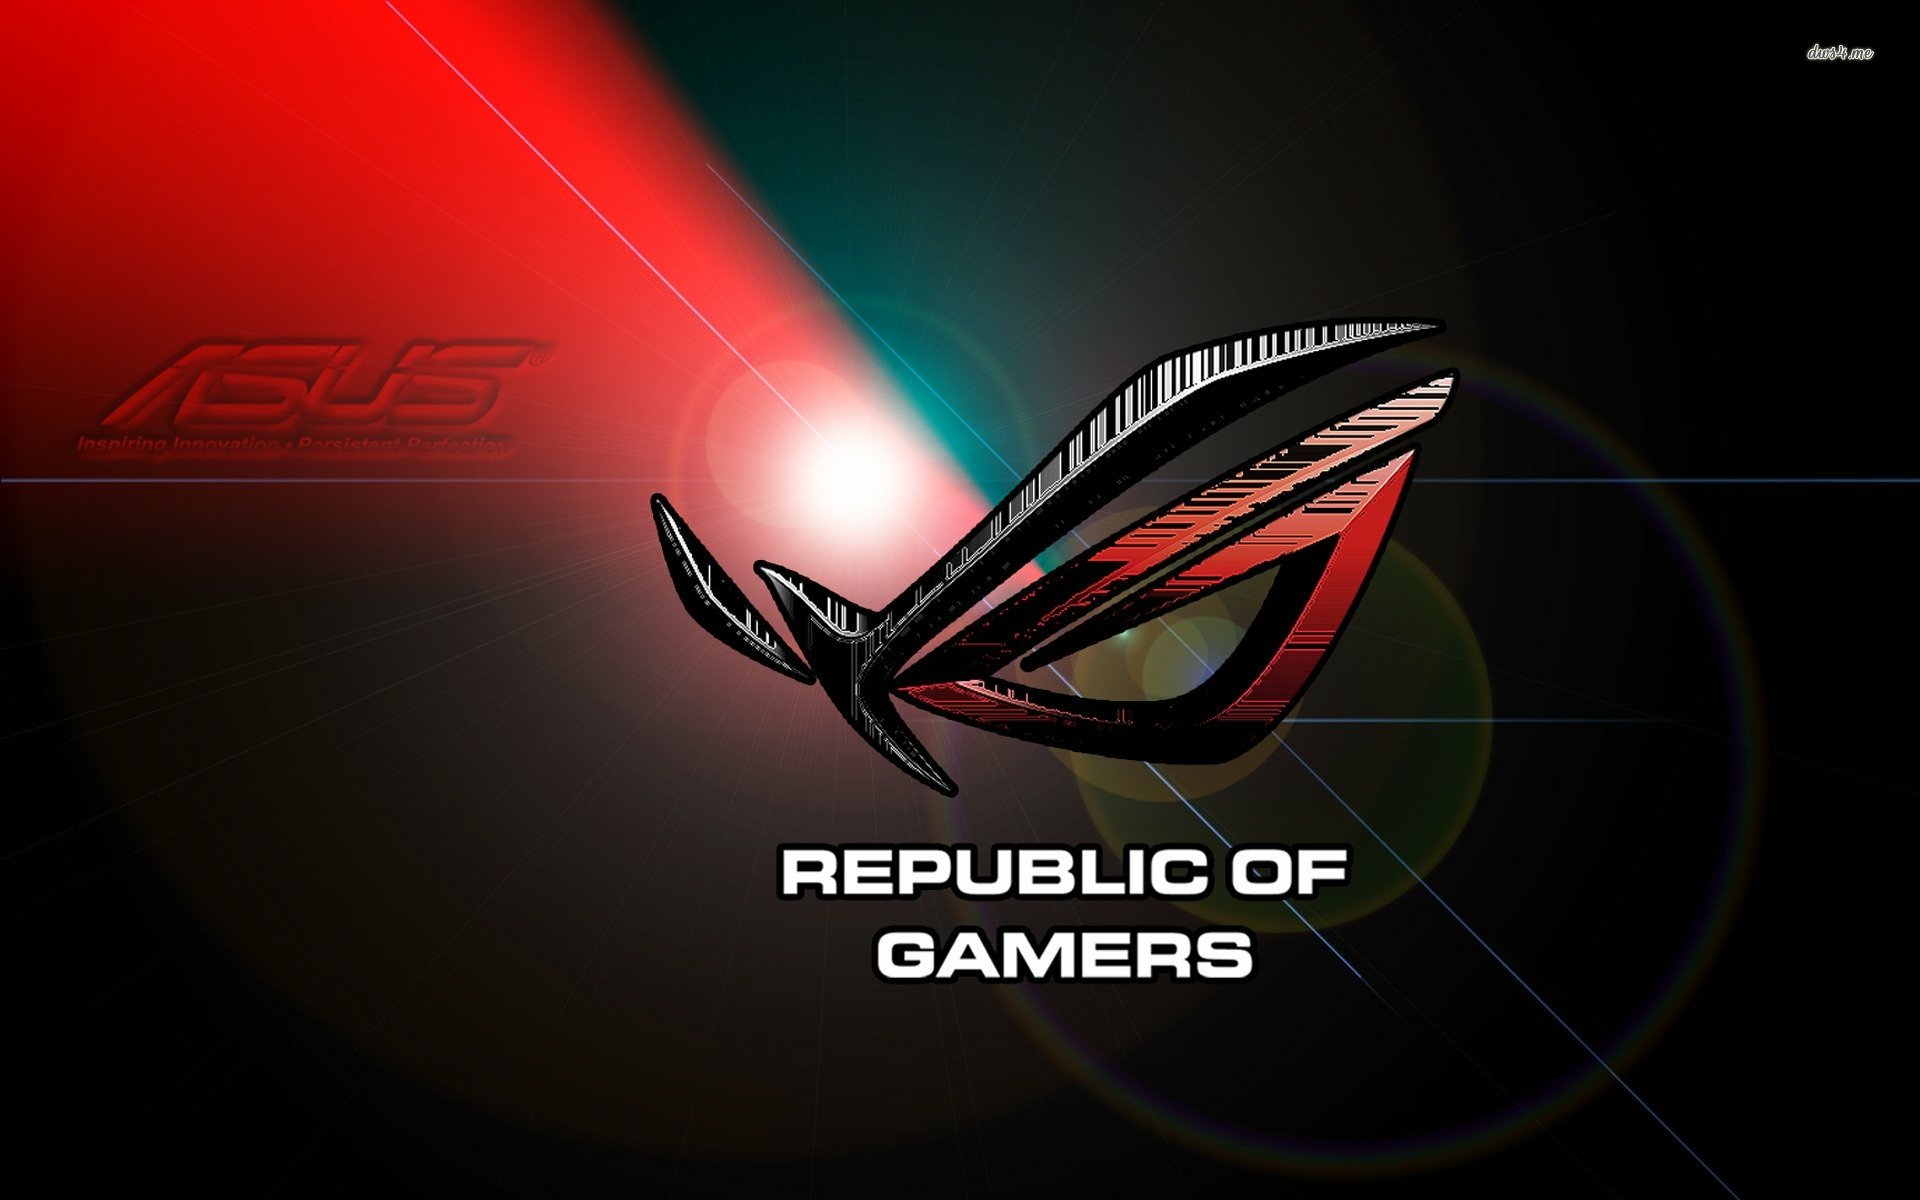 ASUS ROG Republic of Gamers